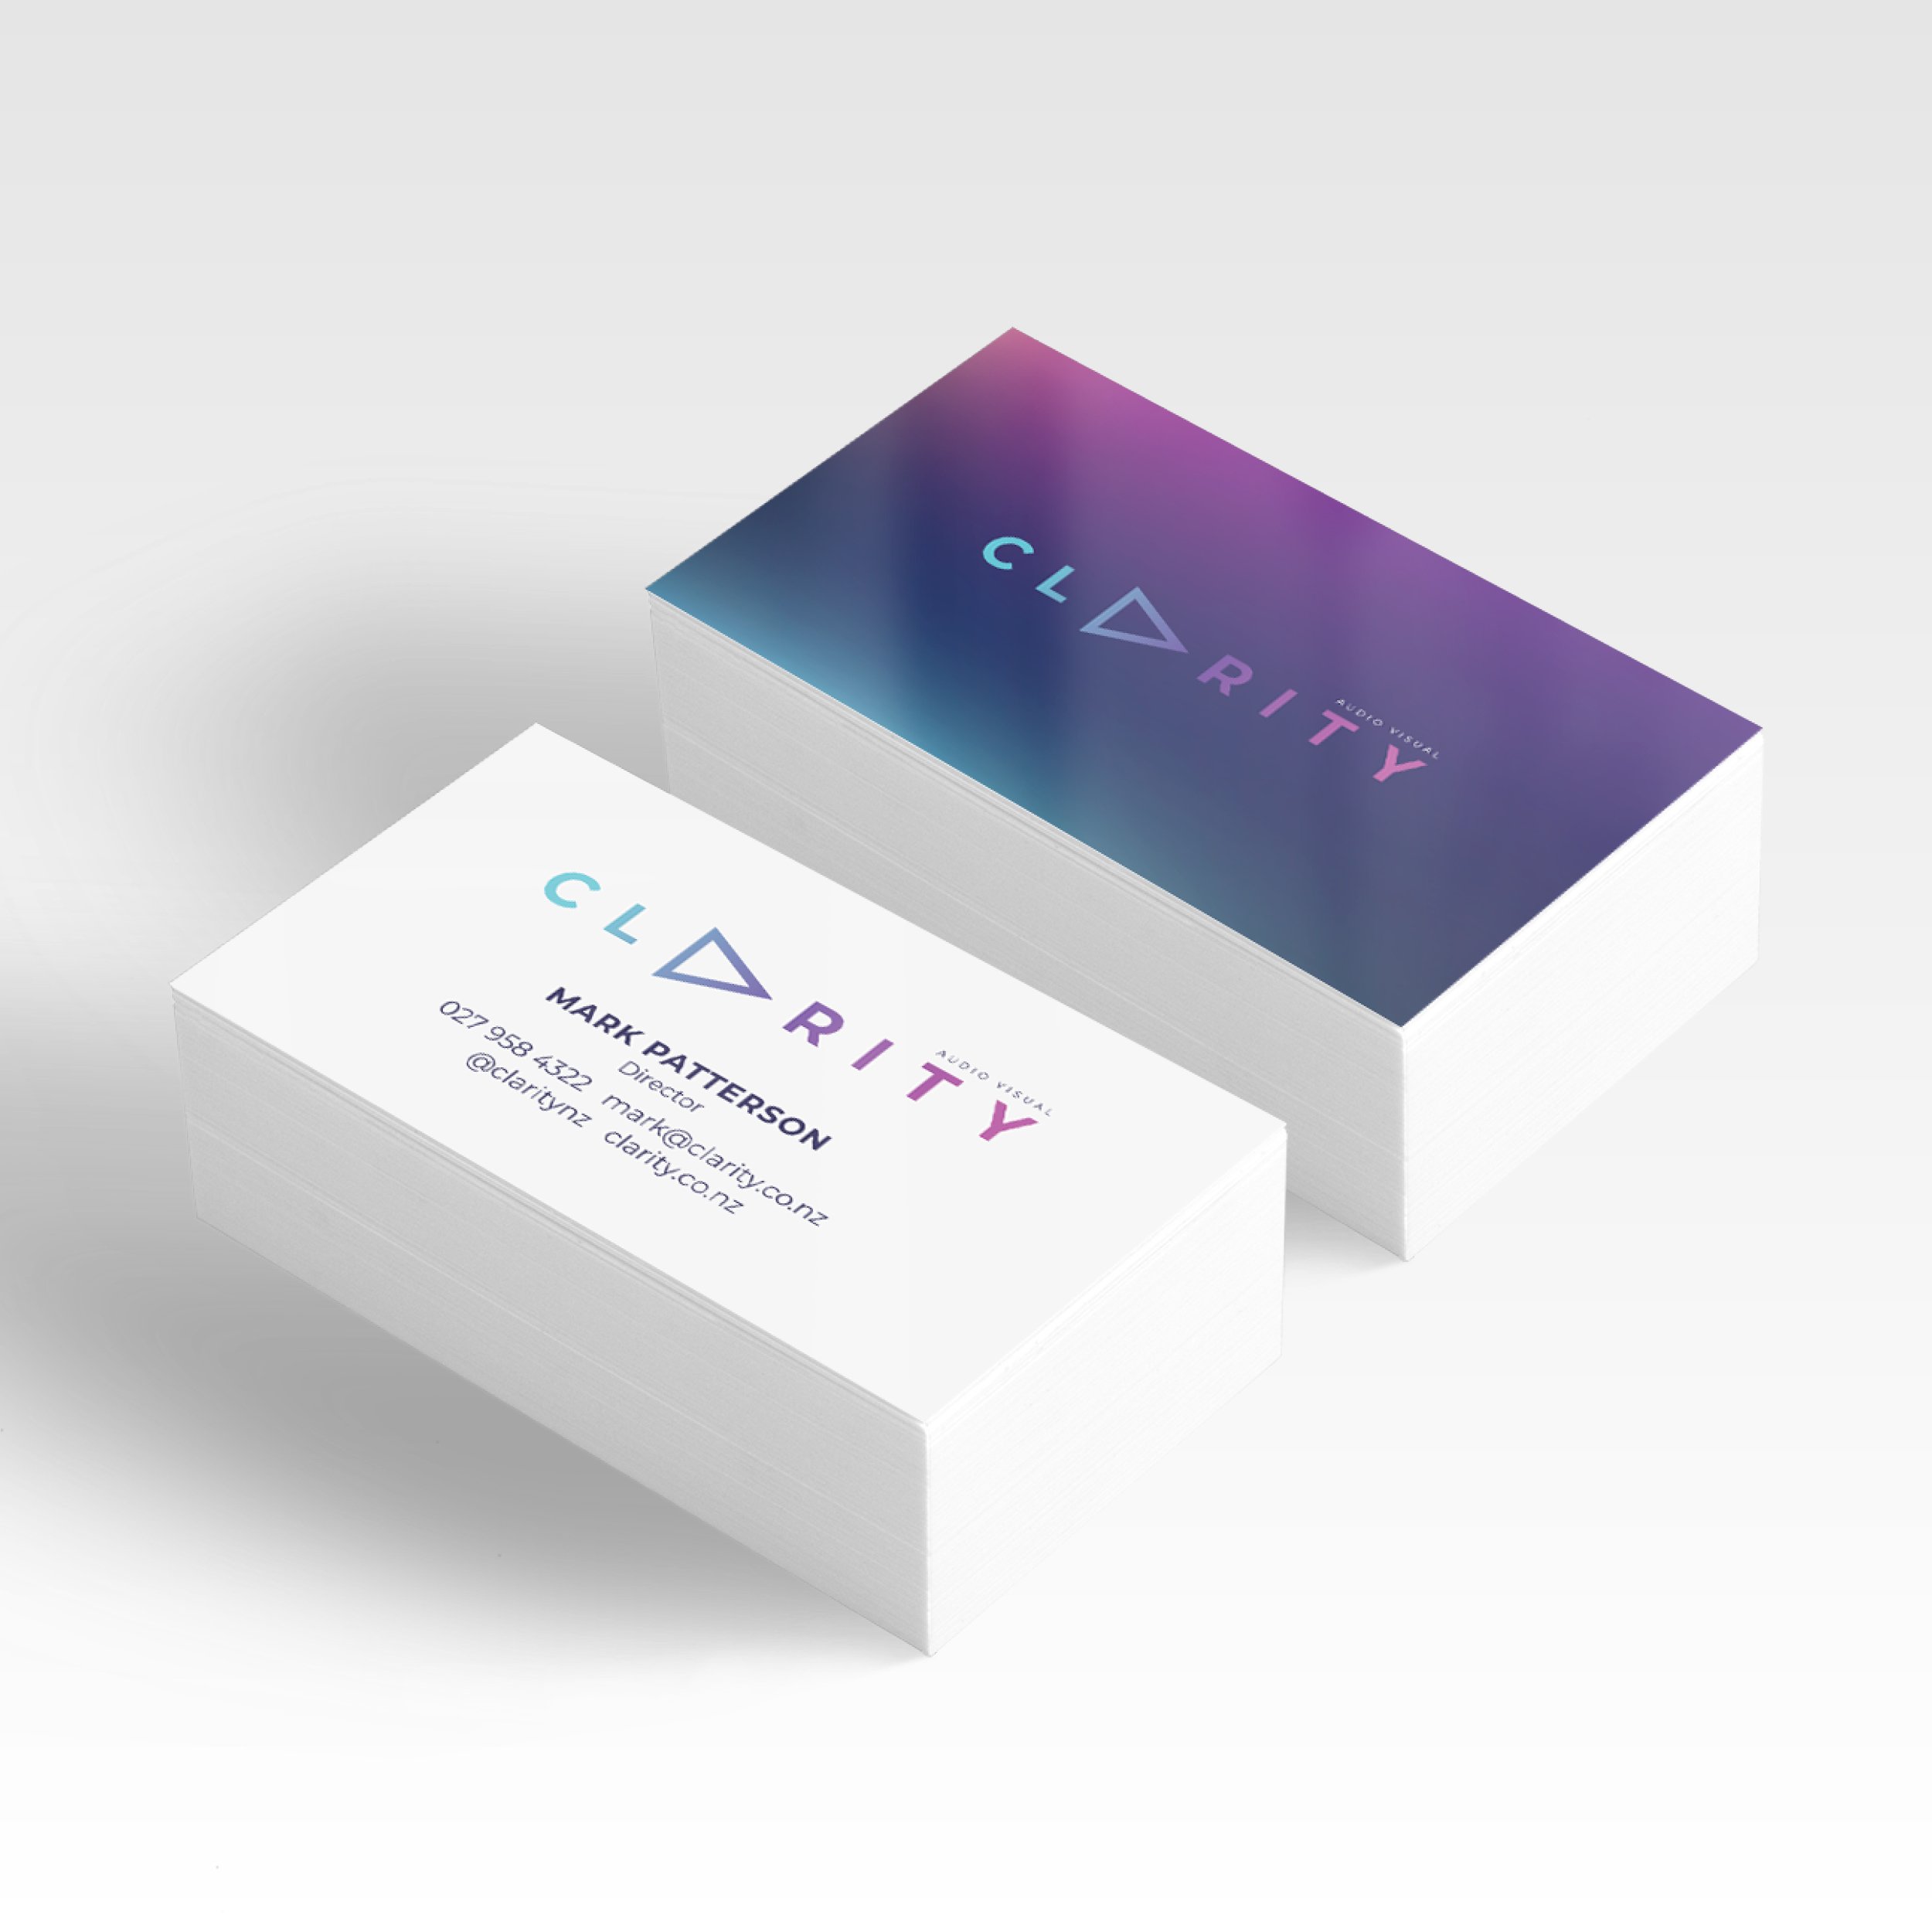 Clarity - Brand Slides4.jpg